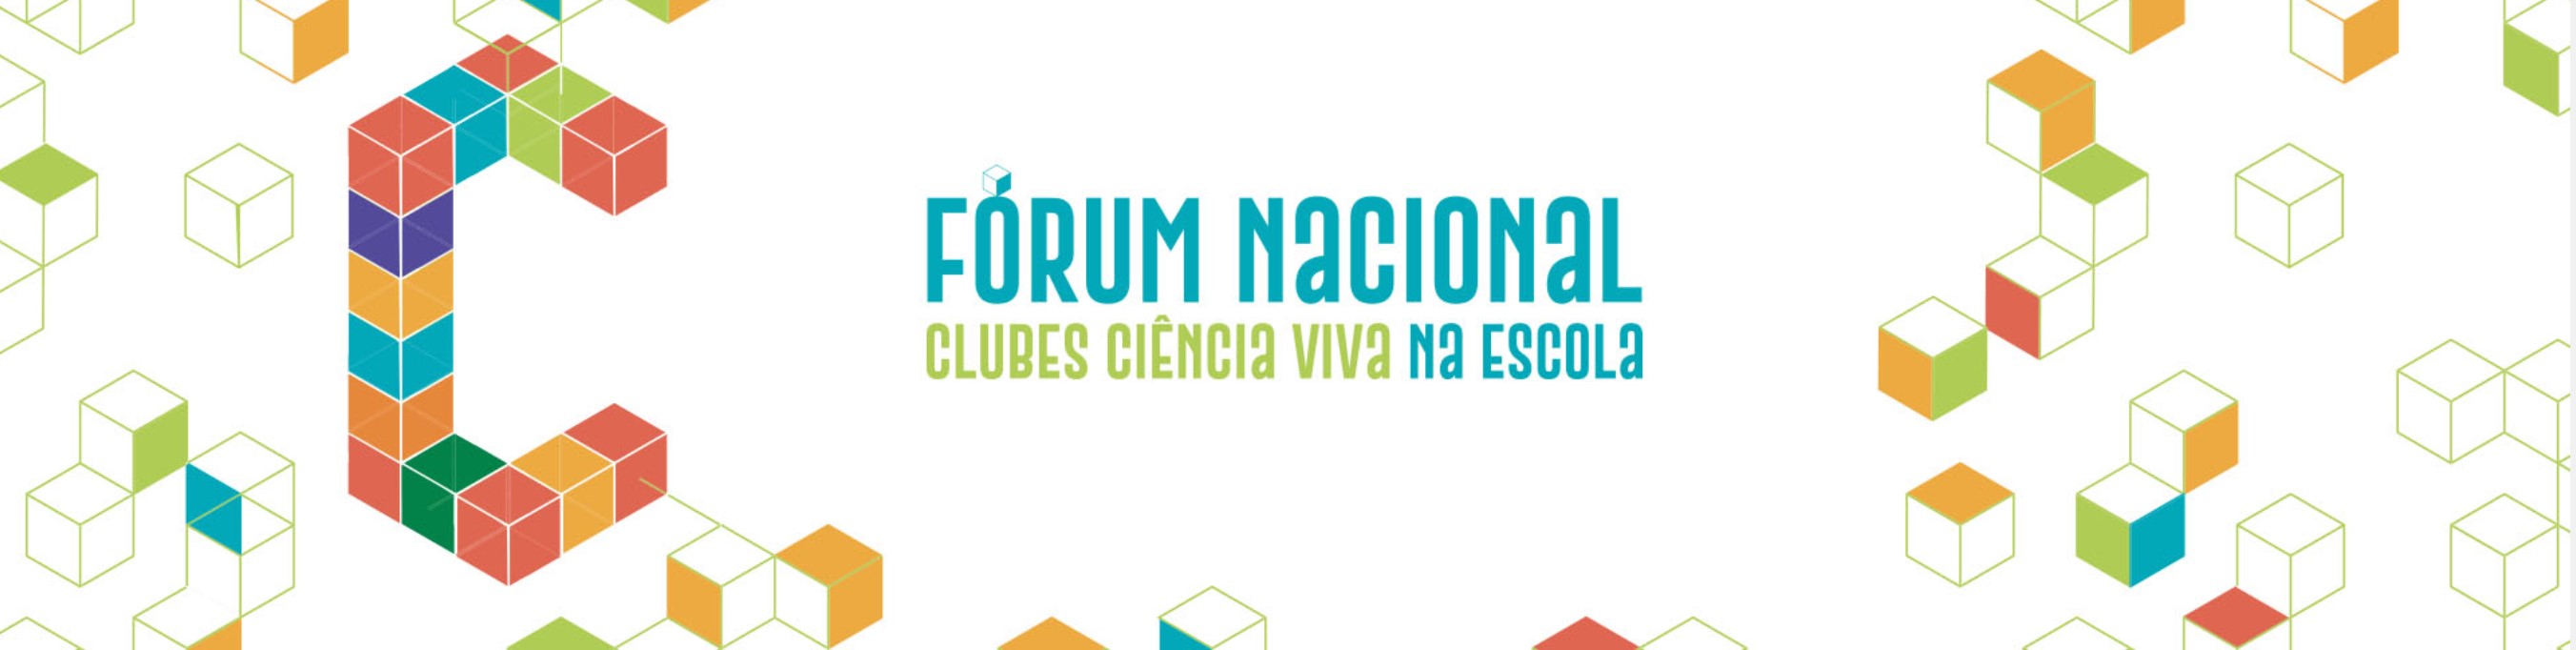 forum nacional